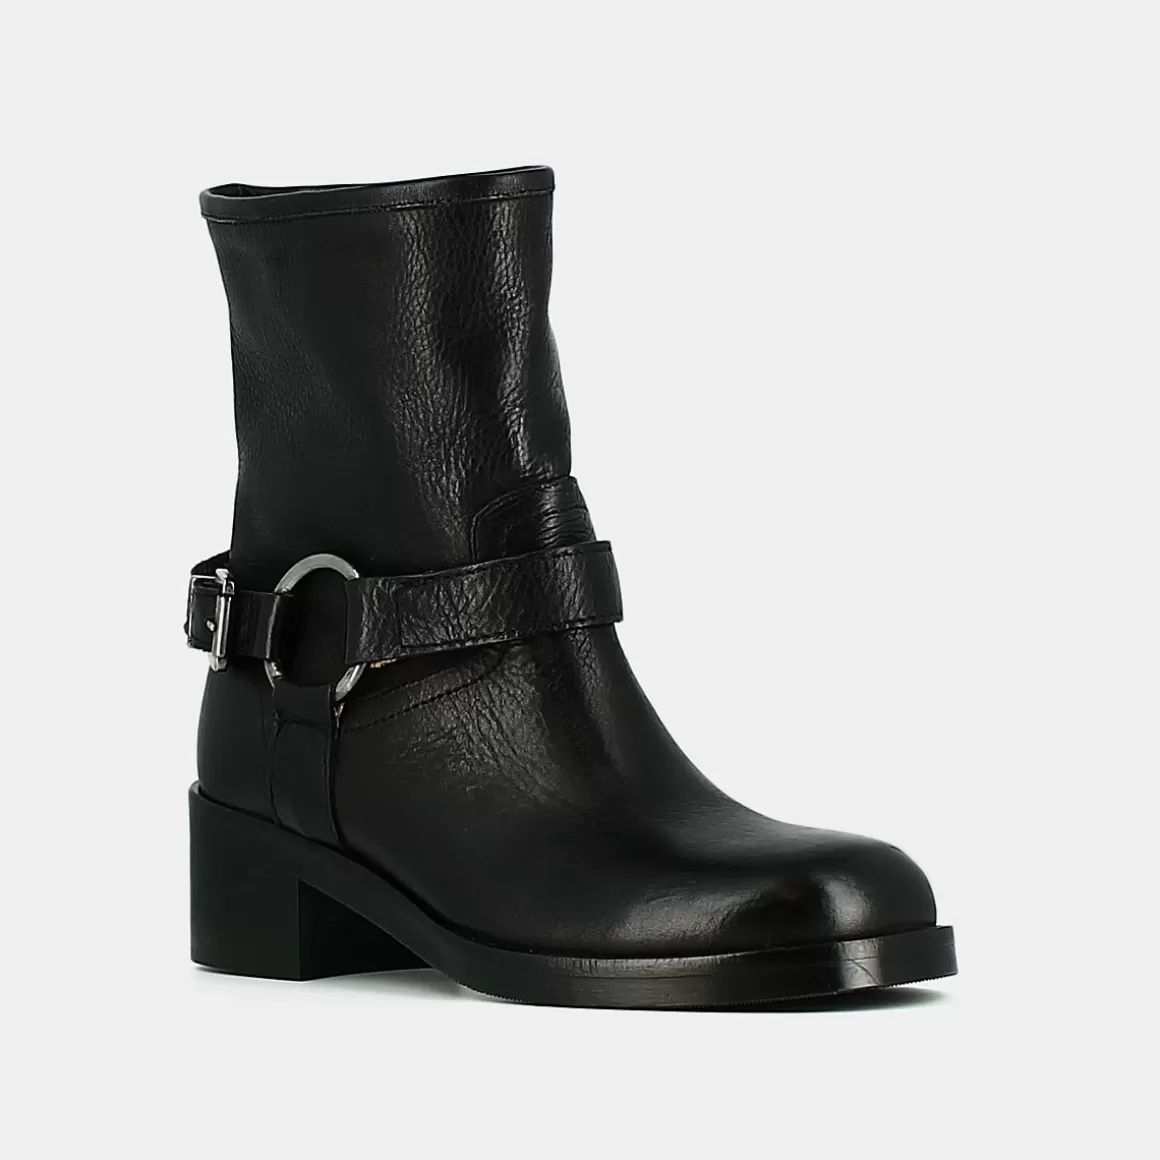 Buckle boots<Jonak Cheap